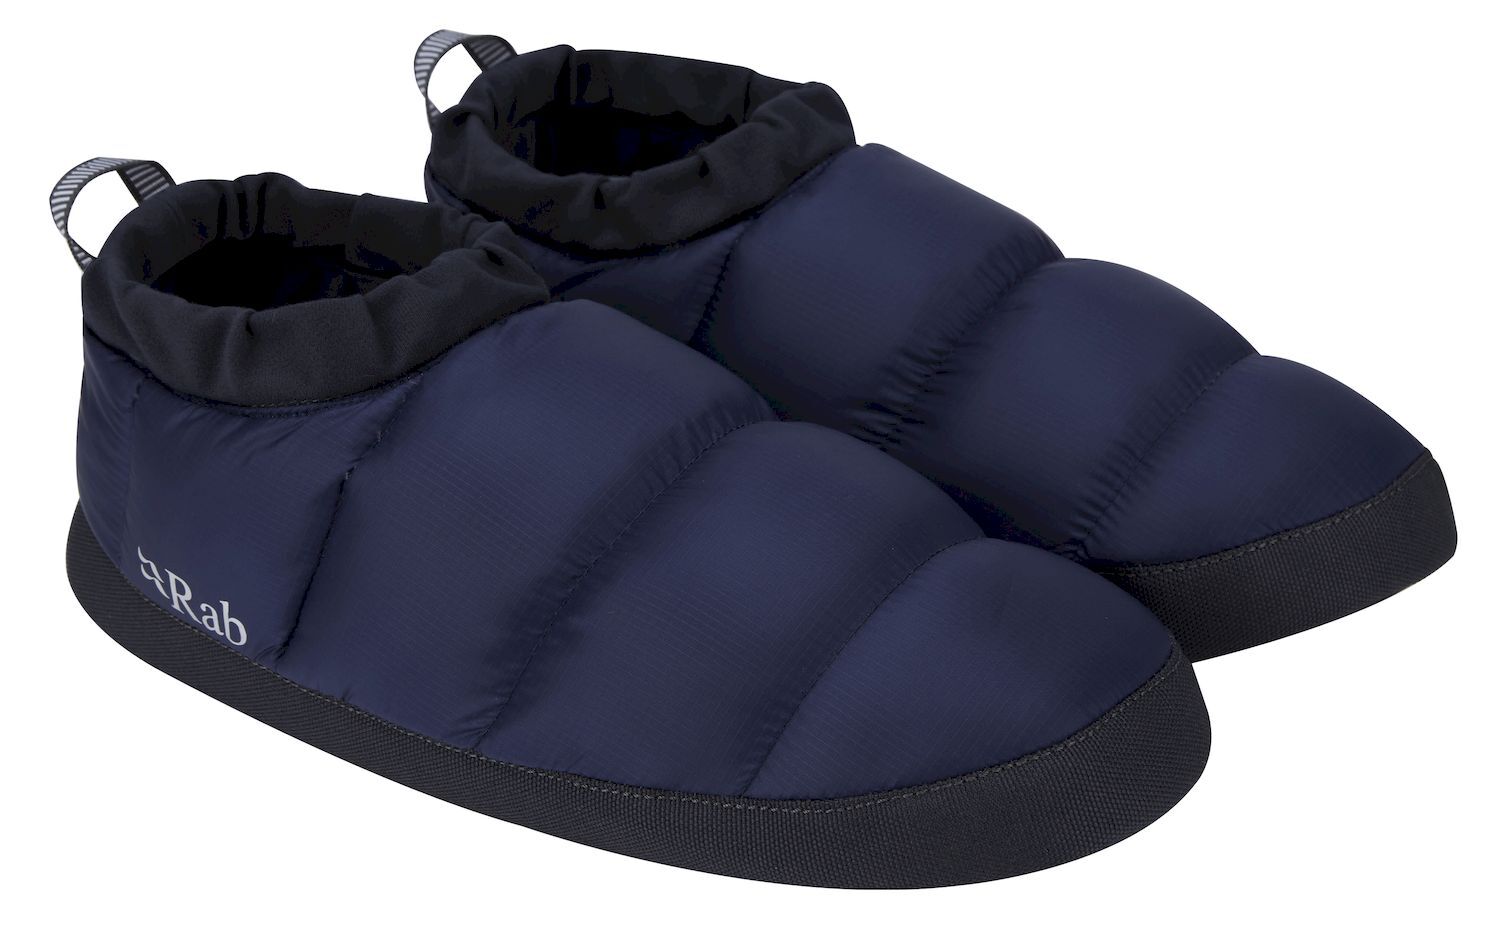 Rab Down Hut Slipper - Winter sandals